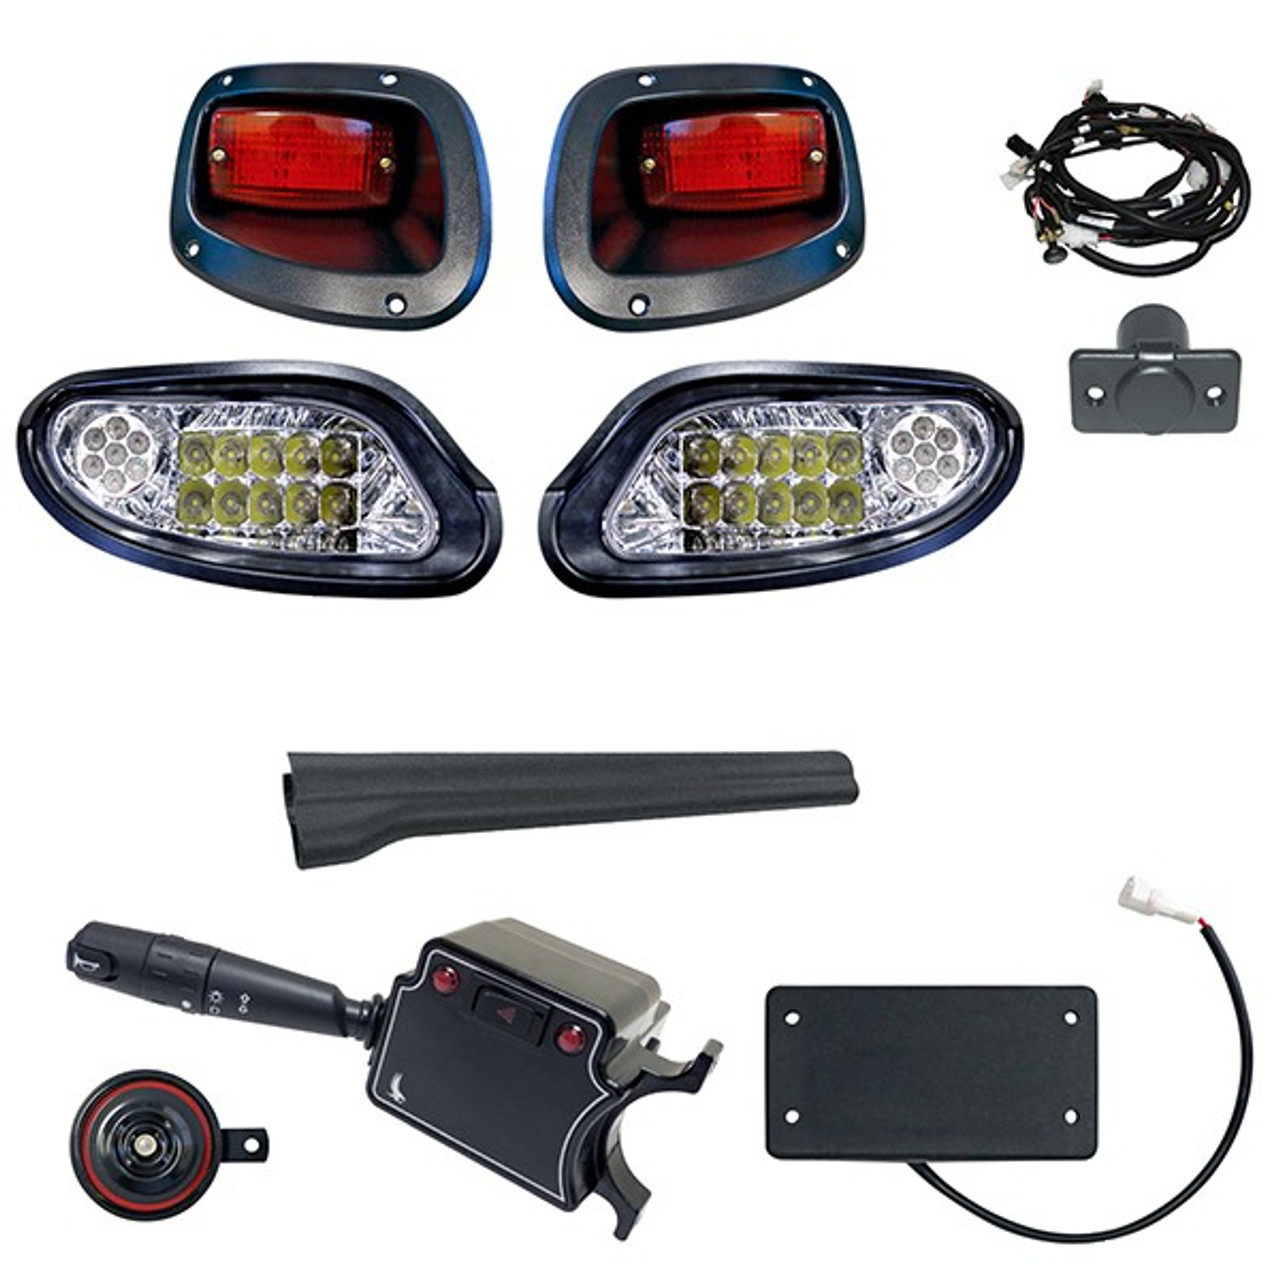 Deluxe LED Factory Style Light Kit for E-Z-Go TXT 2014+ Golf Cart ( OE Fit), LGT-371LT3B10